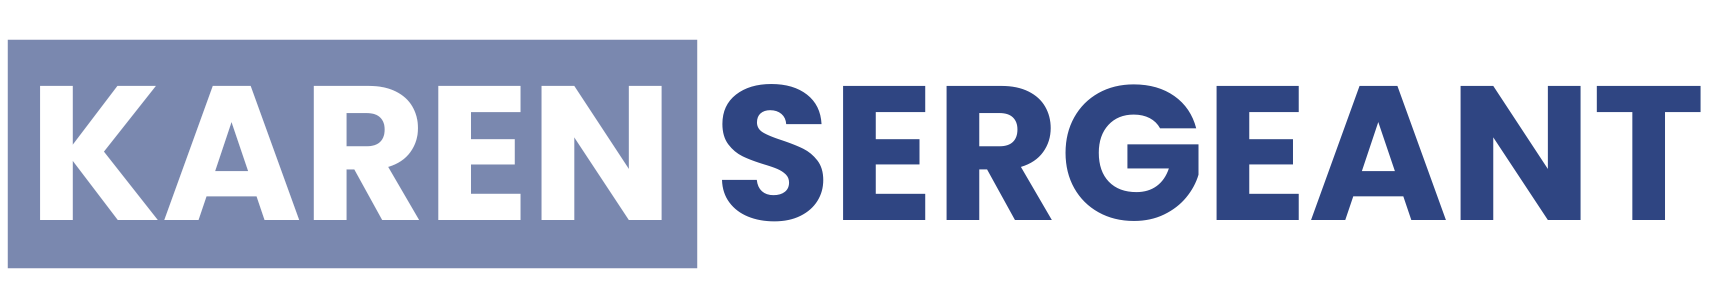 Karen Sergeant logo